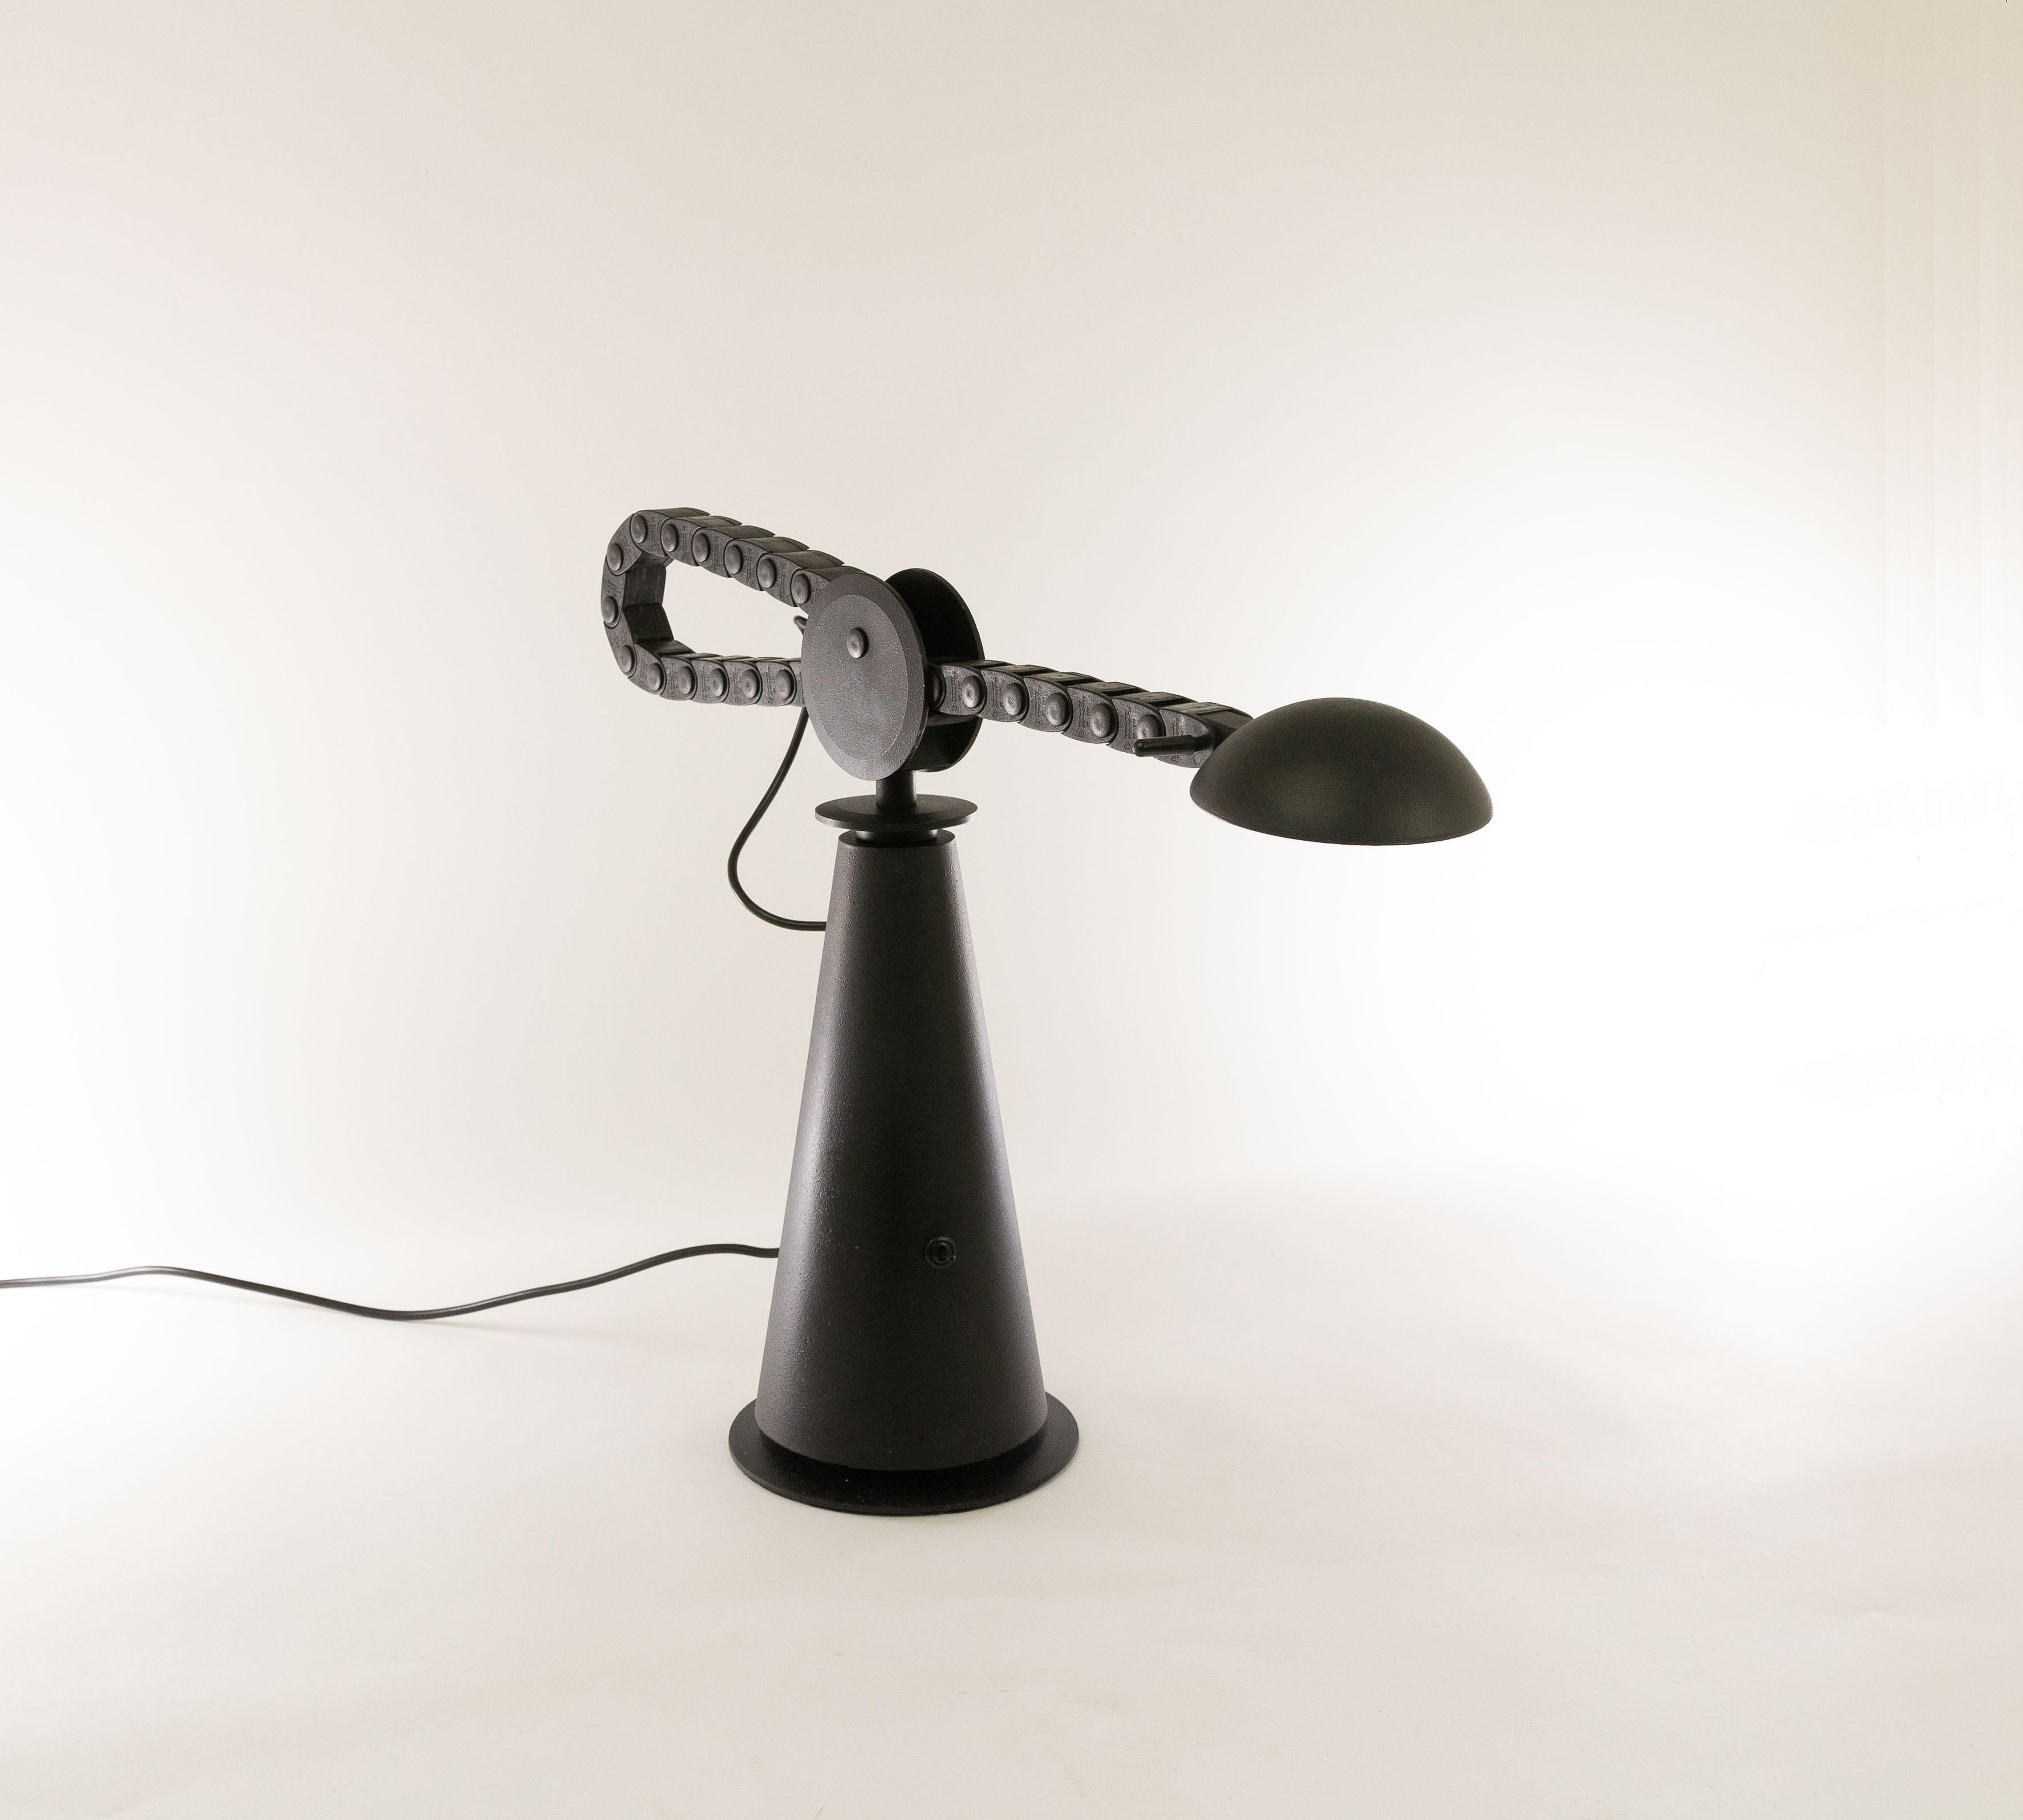 Lampe de table halogène Gaucho conçue par le Studio PER et fabriquée par Egoluce en 1982.

La base, relativement lourde, est en métal, tout comme le réflecteur et la 